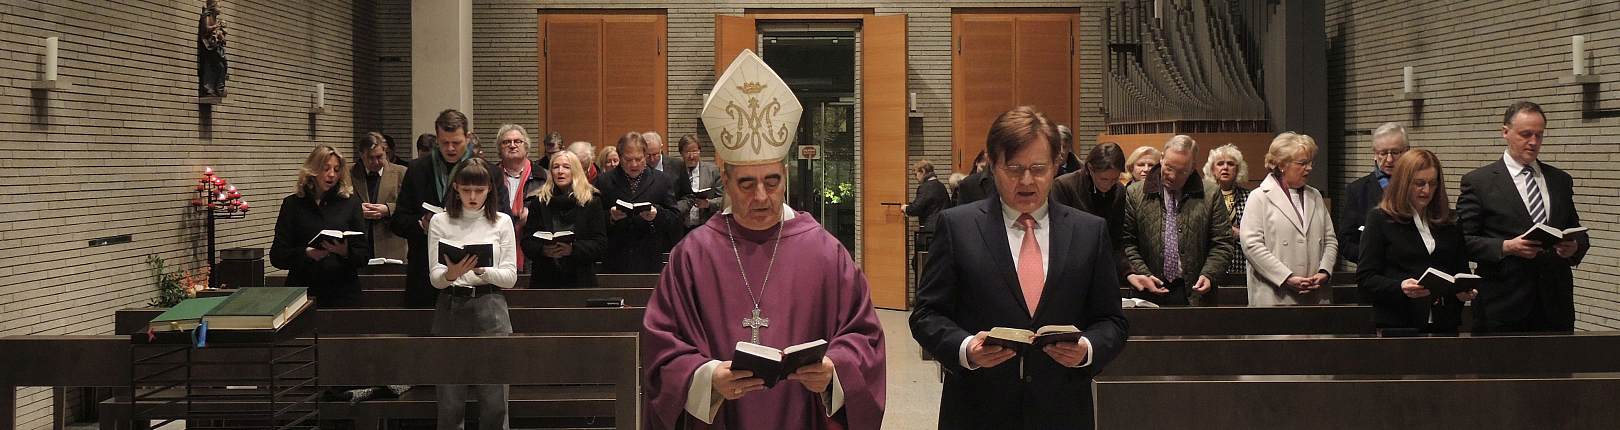 Der Apostolischer Nuntius feierte mit den Mitgliedern der DG Berlin-Brandenburg die Heilige Messe